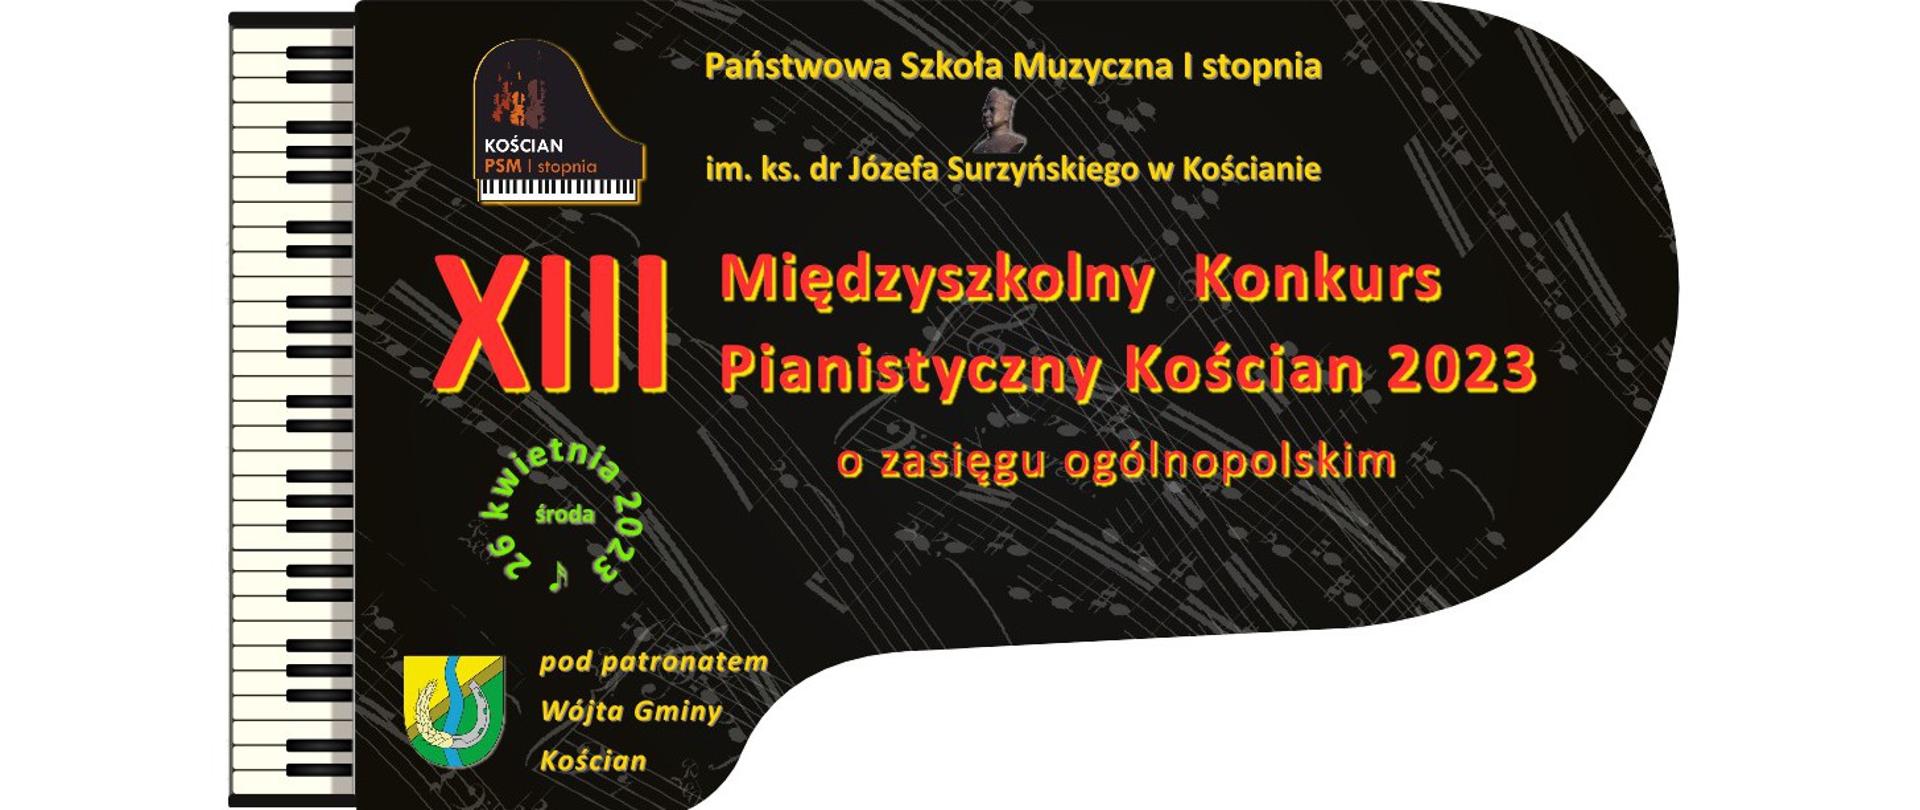 plakat w kształcie pudła fortepianu widzianego z góry z informacjami o XIII Międzyszkolnym Konkursie Pianistycznym Kościan 2023